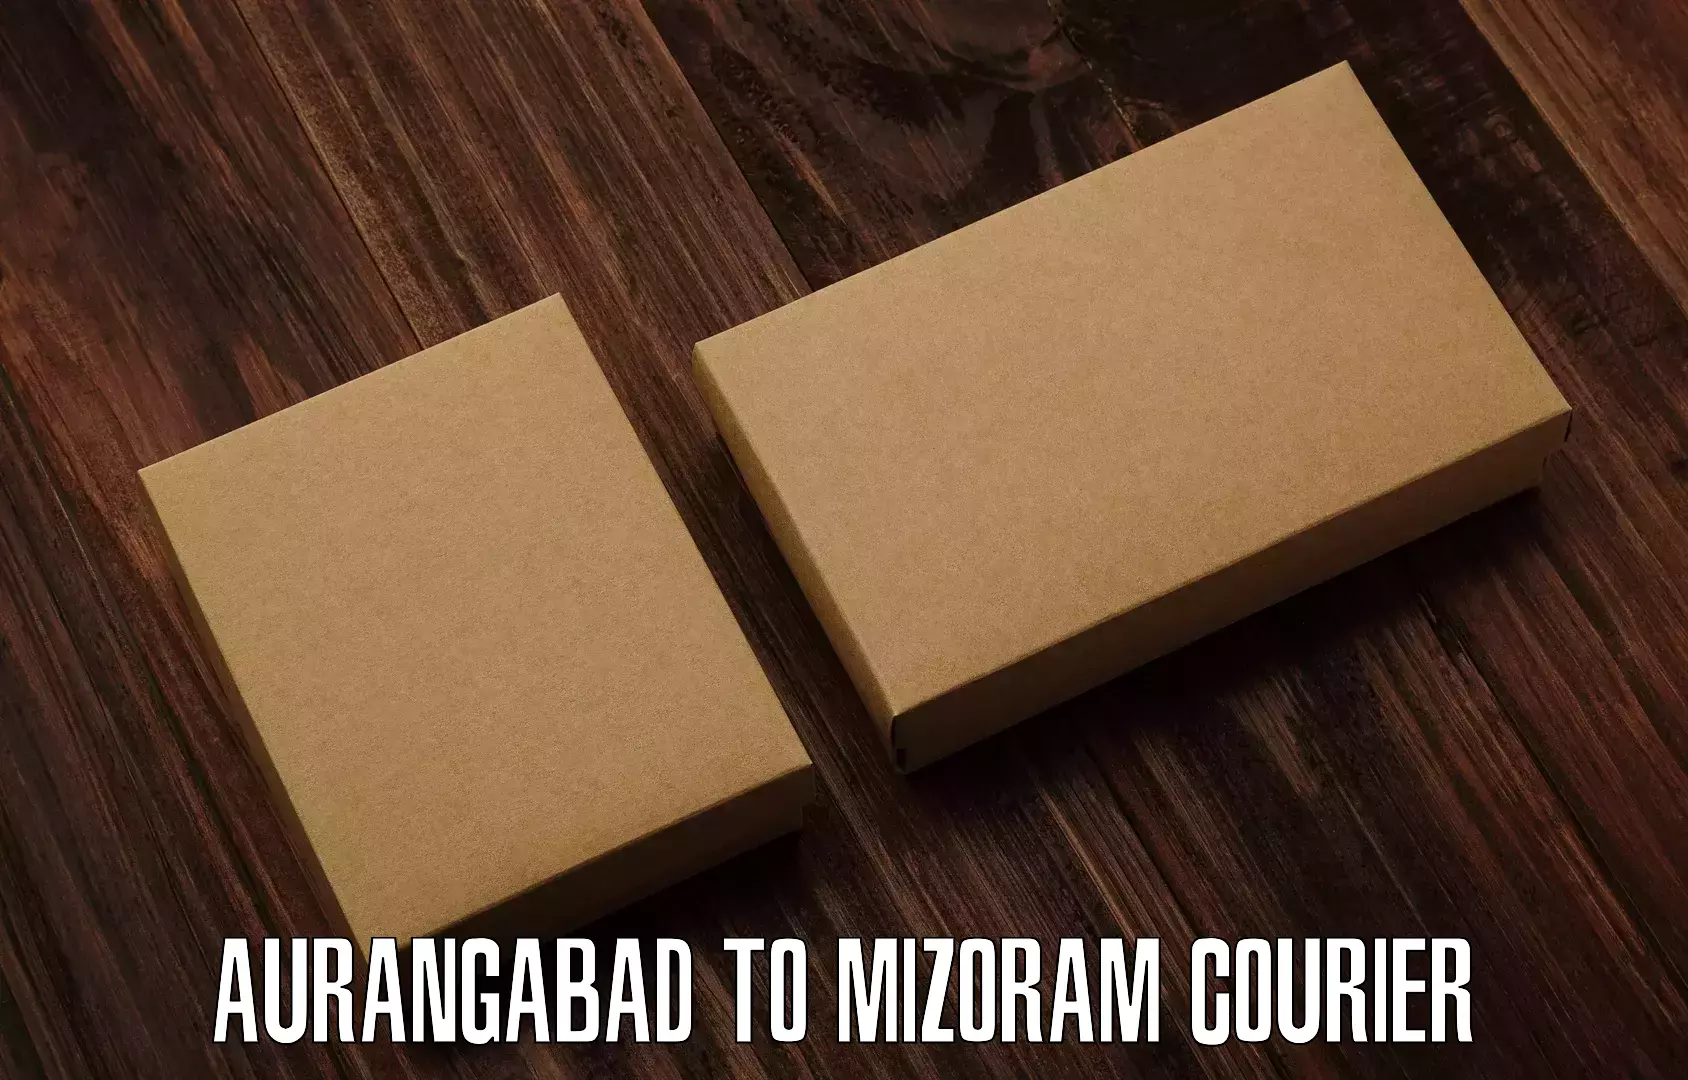 State-of-the-art courier technology Aurangabad to Khawzawl